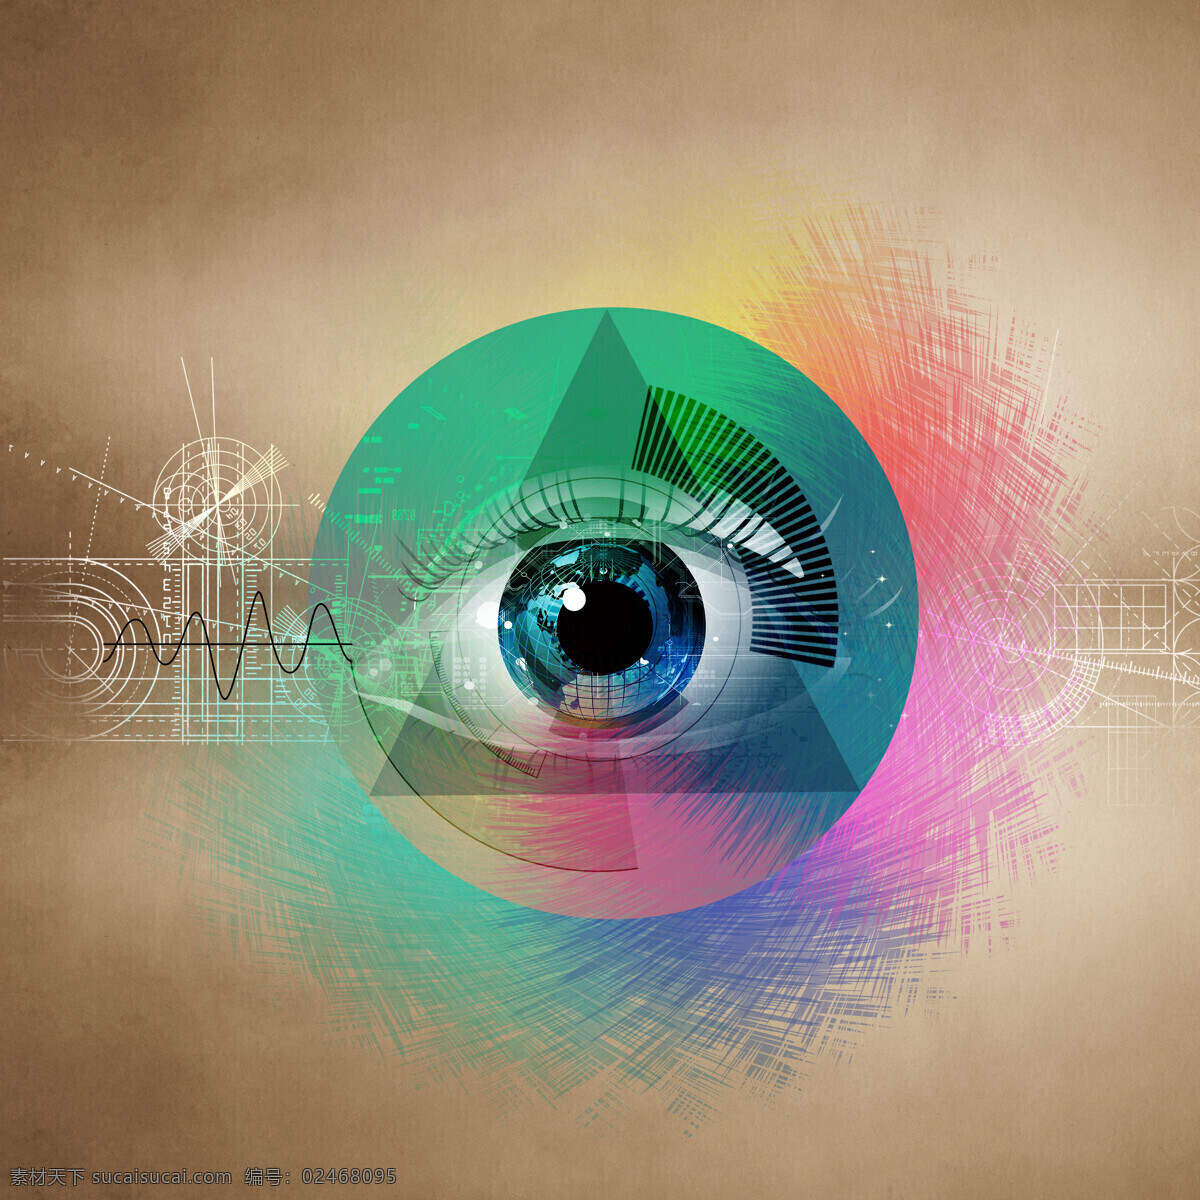 眼睛 科技 背景 眼珠 瞳孔 眼睛背景 科技背景 其他类别 生活百科